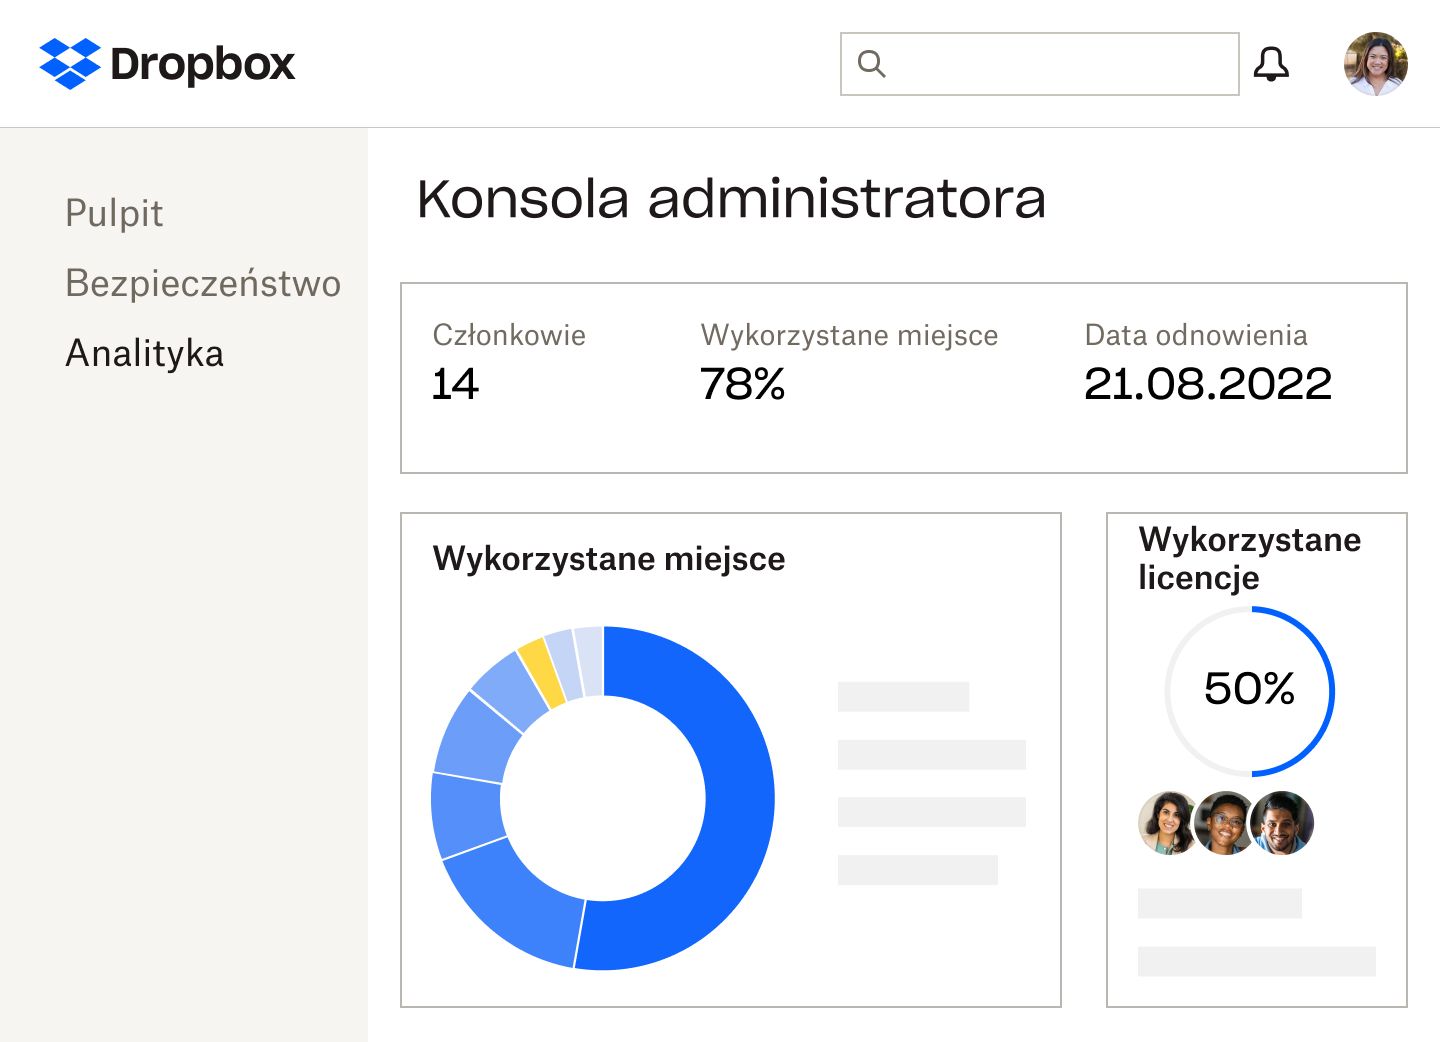 Konsola administratora Dropbox, w której są wyświetlane: liczba członków, procent wykorzystanego miejsca i wykorzystanych licencji, data odnowienia subskrypcji oraz niebiesko-żółty wykres kołowy przedstawiający ilość wykorzystanego miejsca